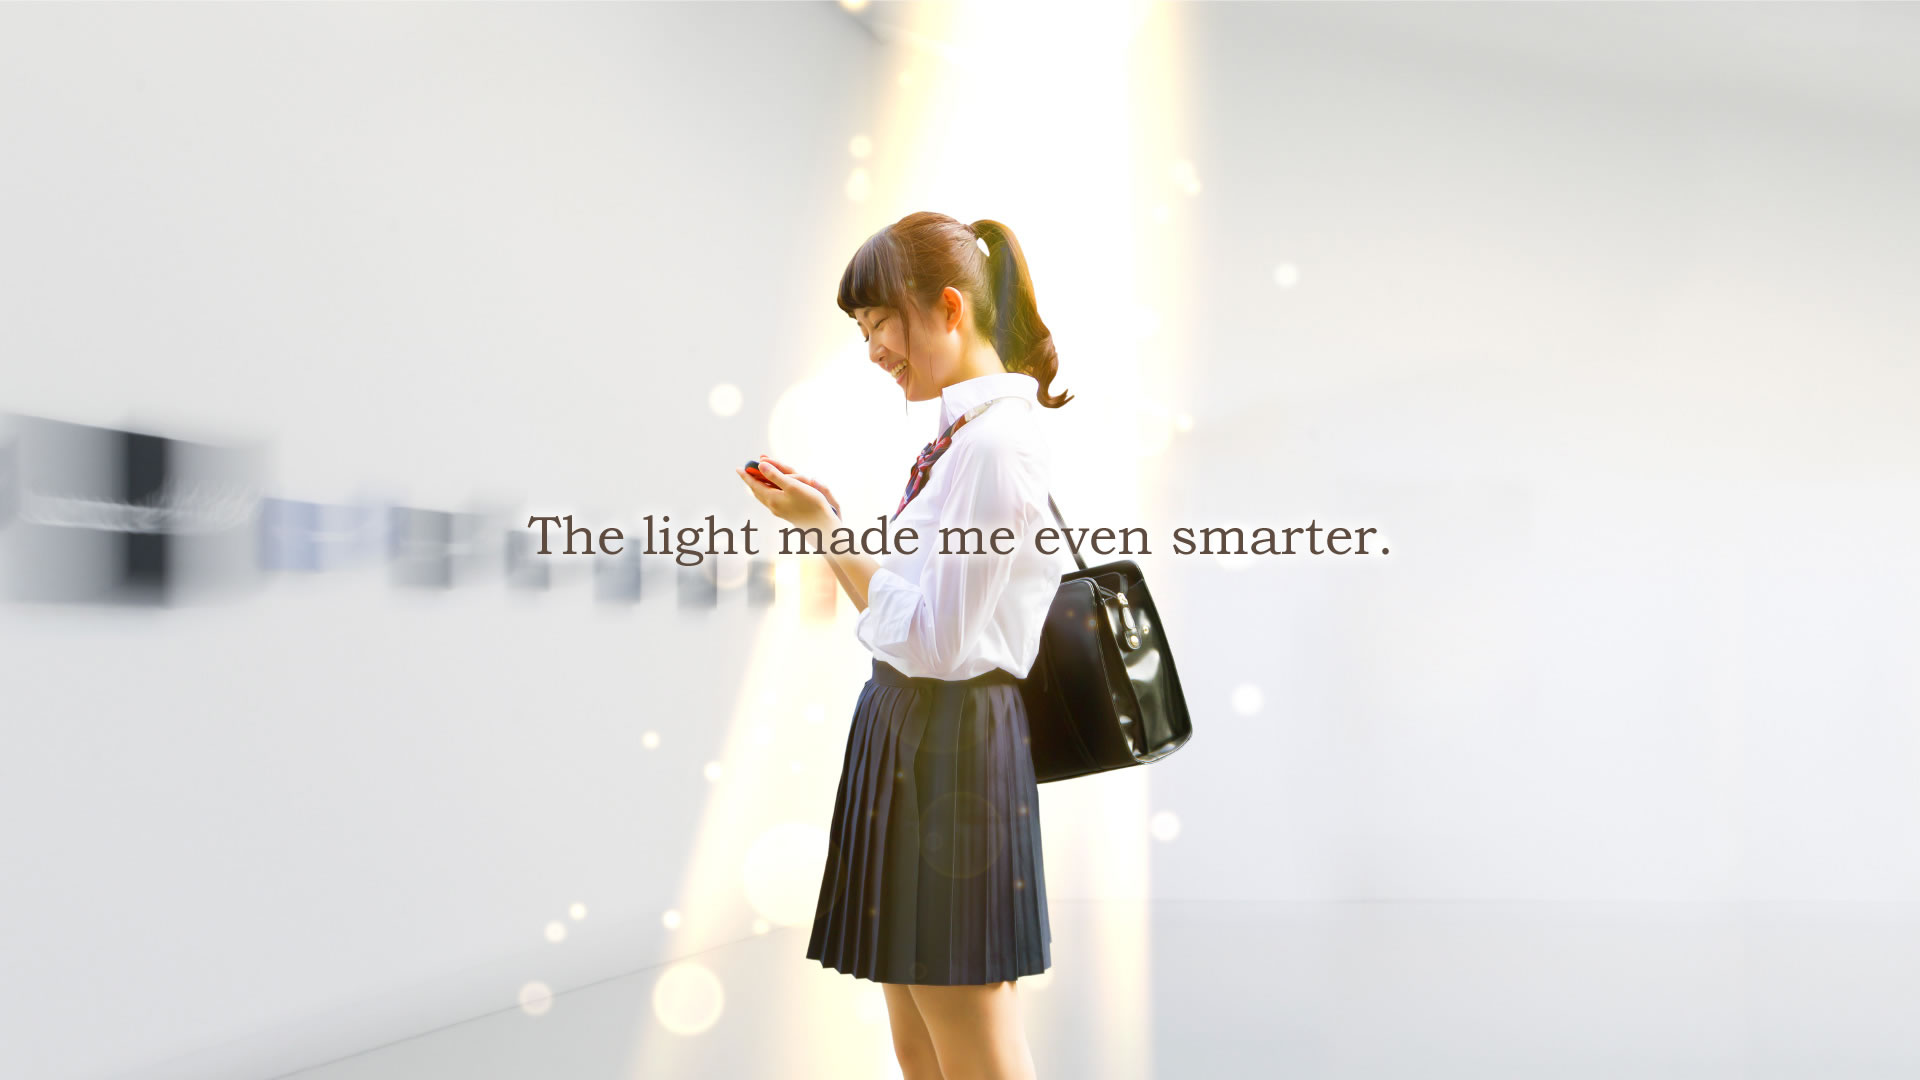 The light made me even smarter.